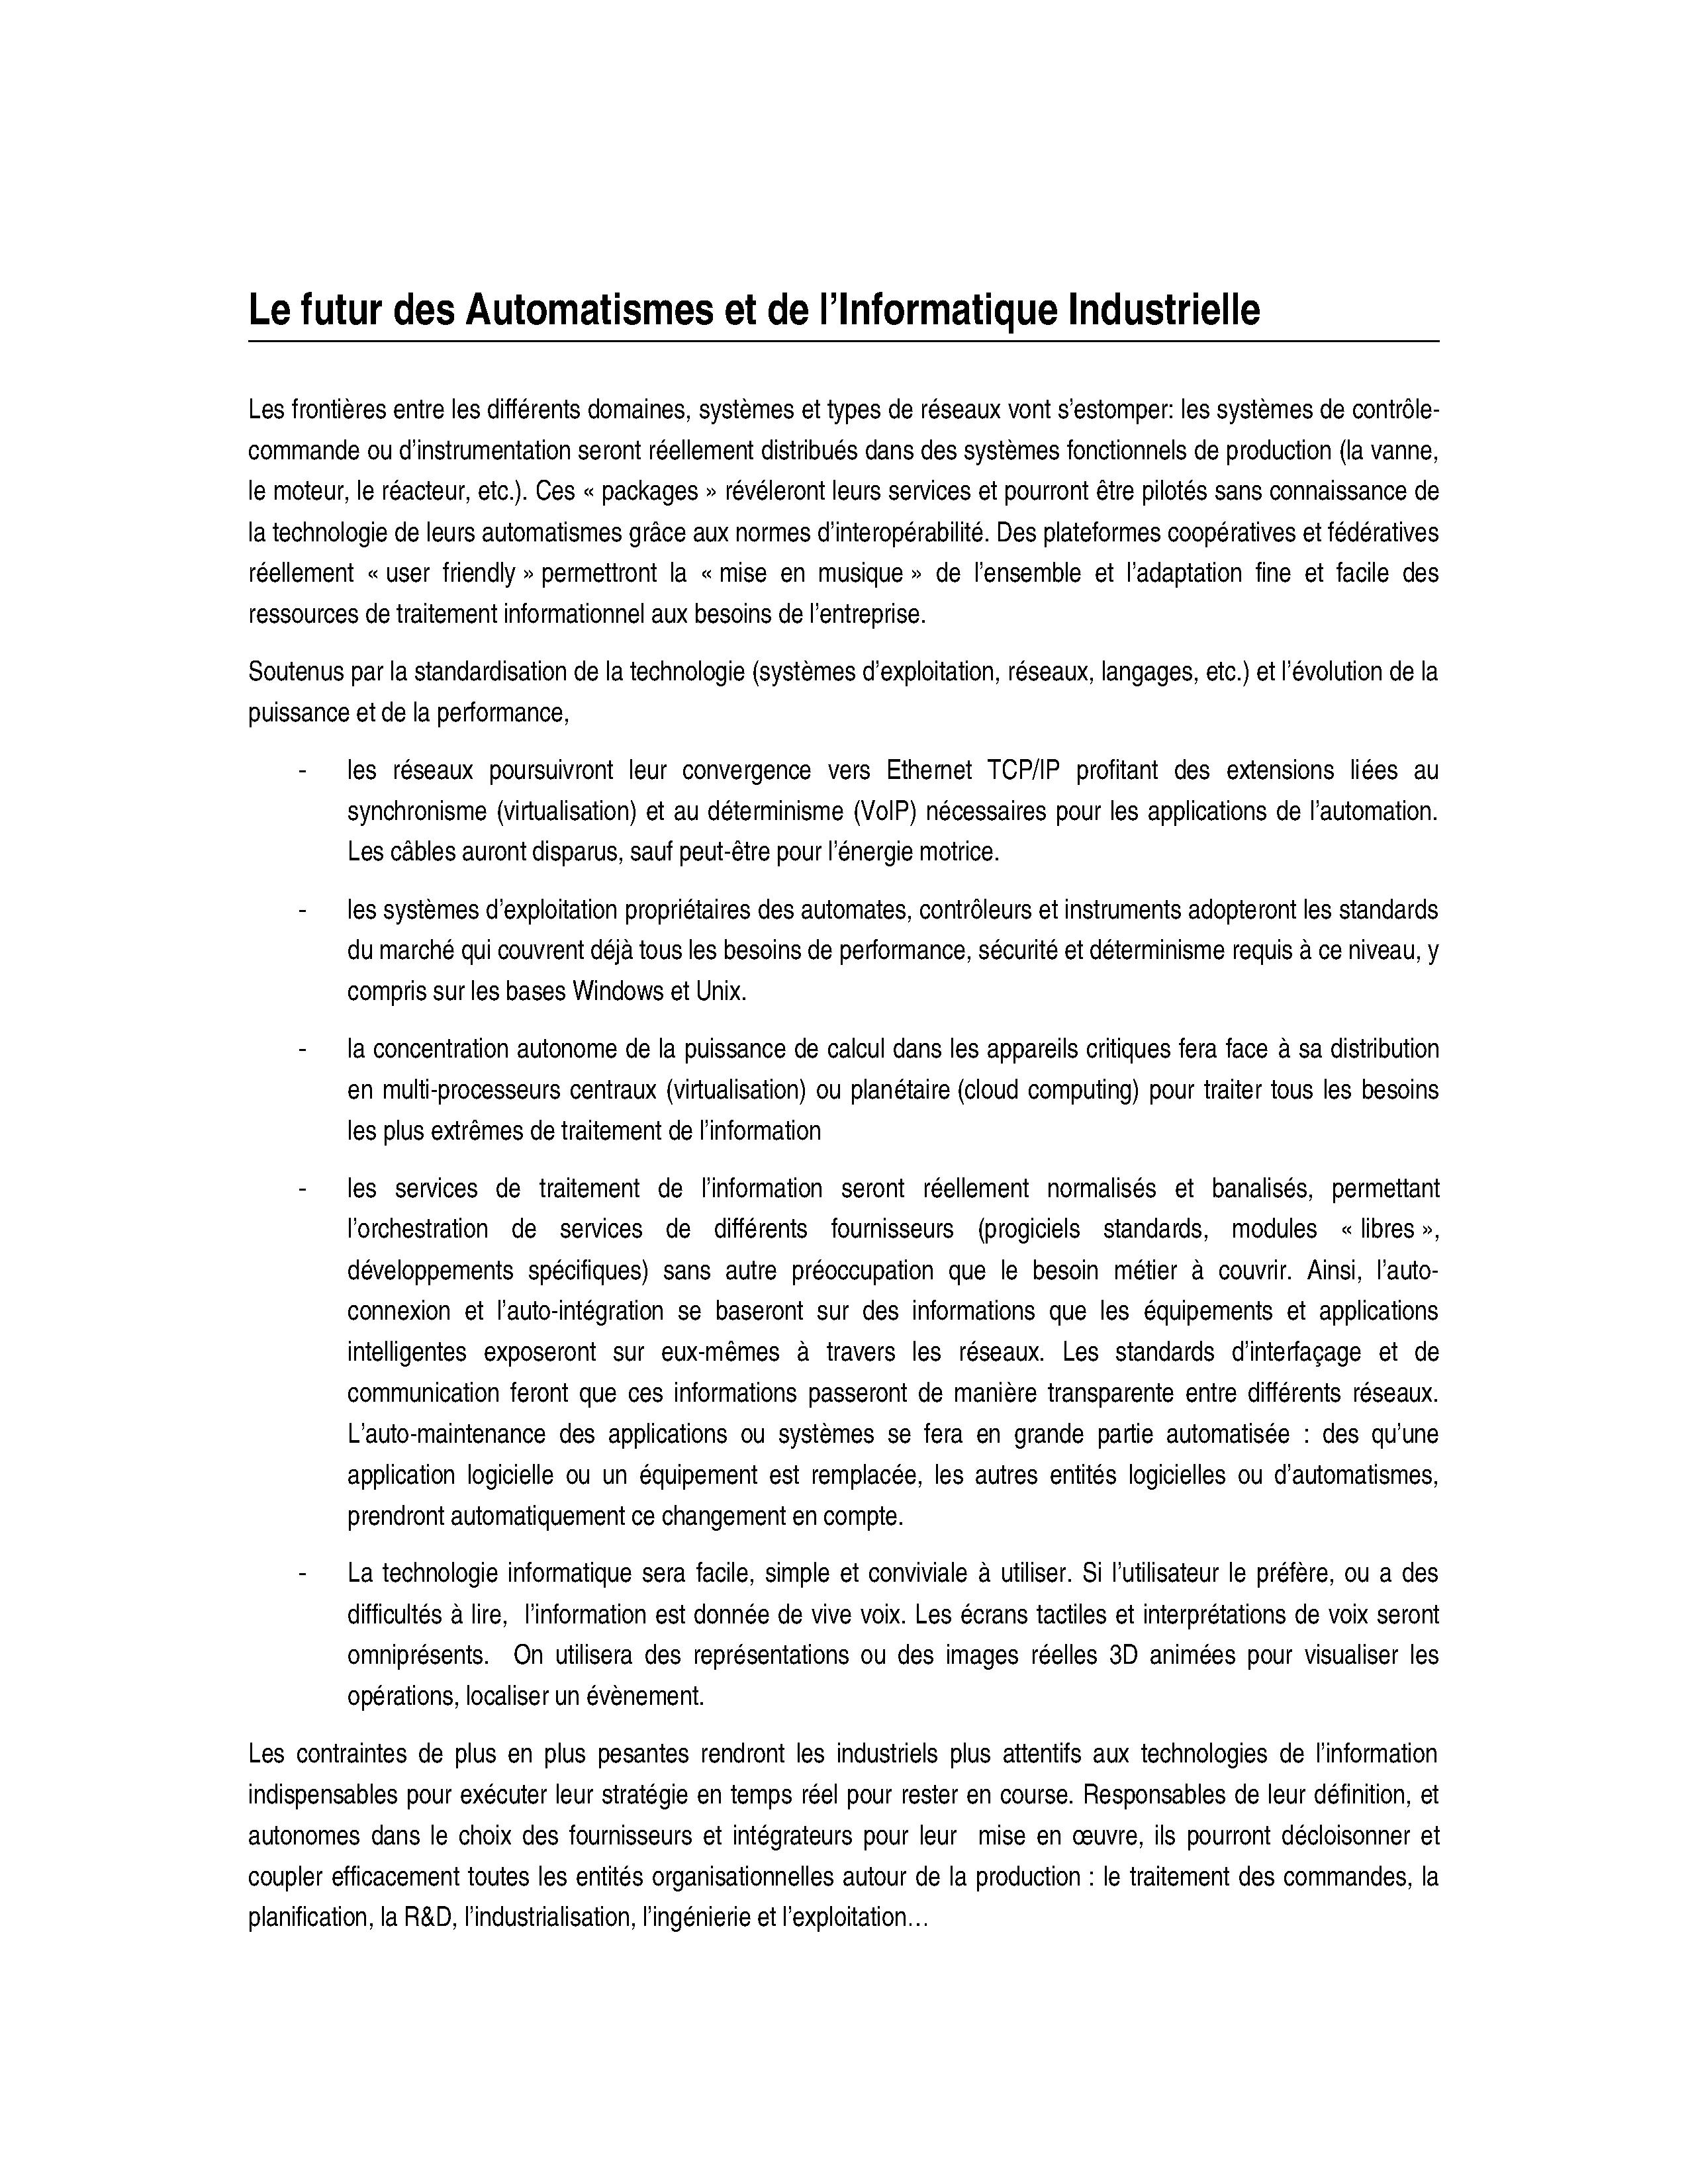 2008 - Jautomatise - Futur des Automatismes et de lInformatique Industrielle.doc